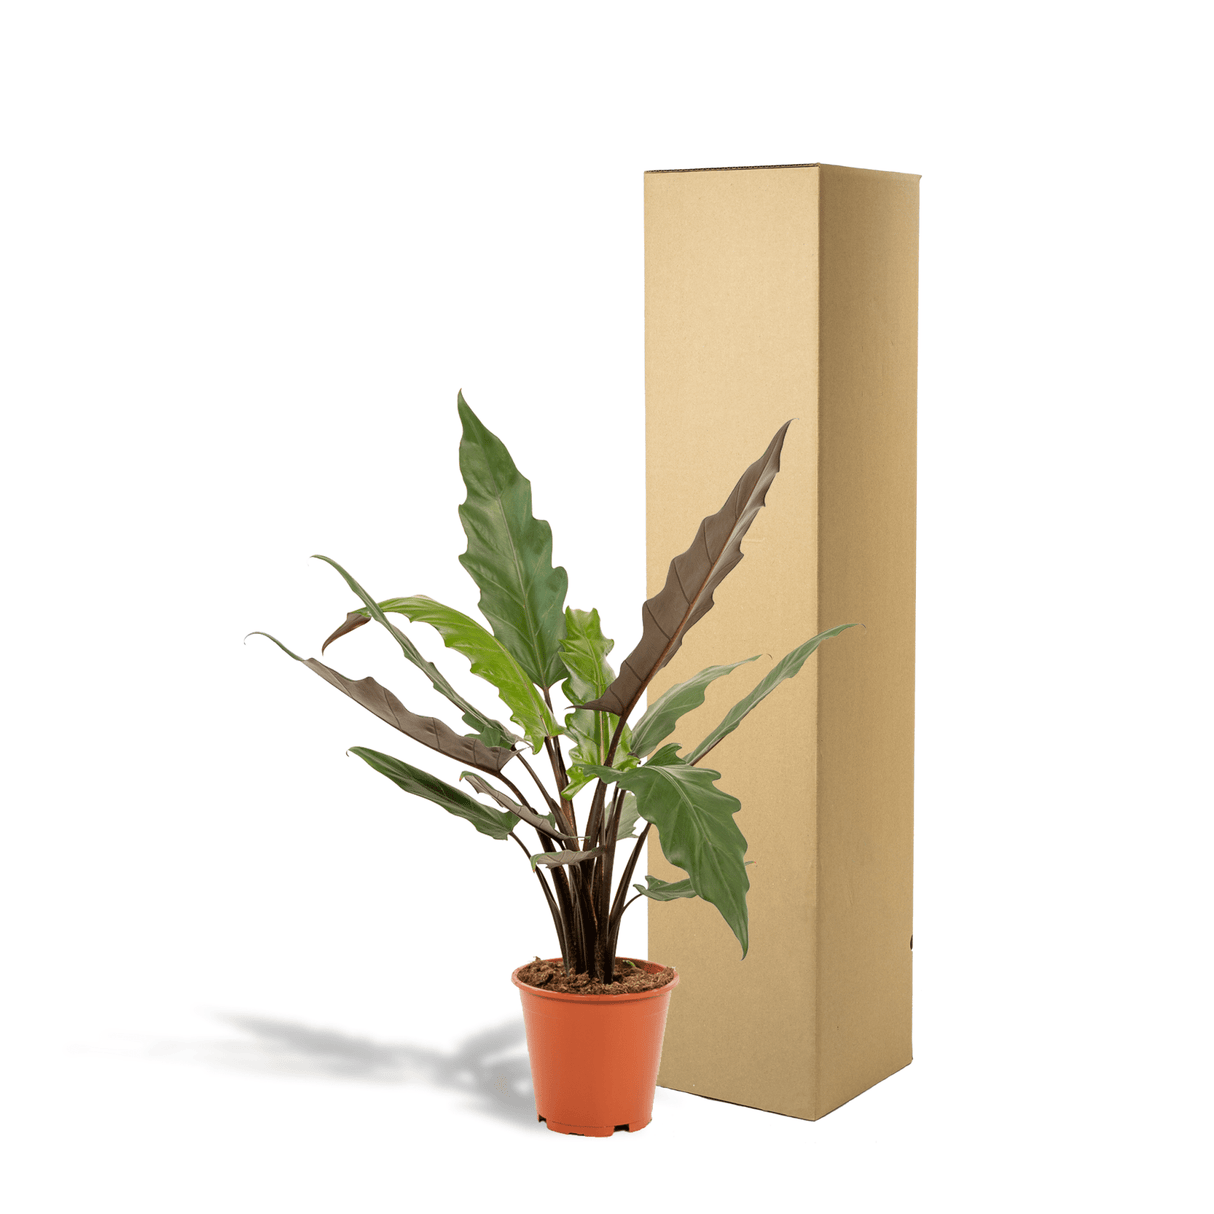 Livraison plante - Alocasia Lauterbachiana - h80cm, Ø19cm - grande plante d'intérieur